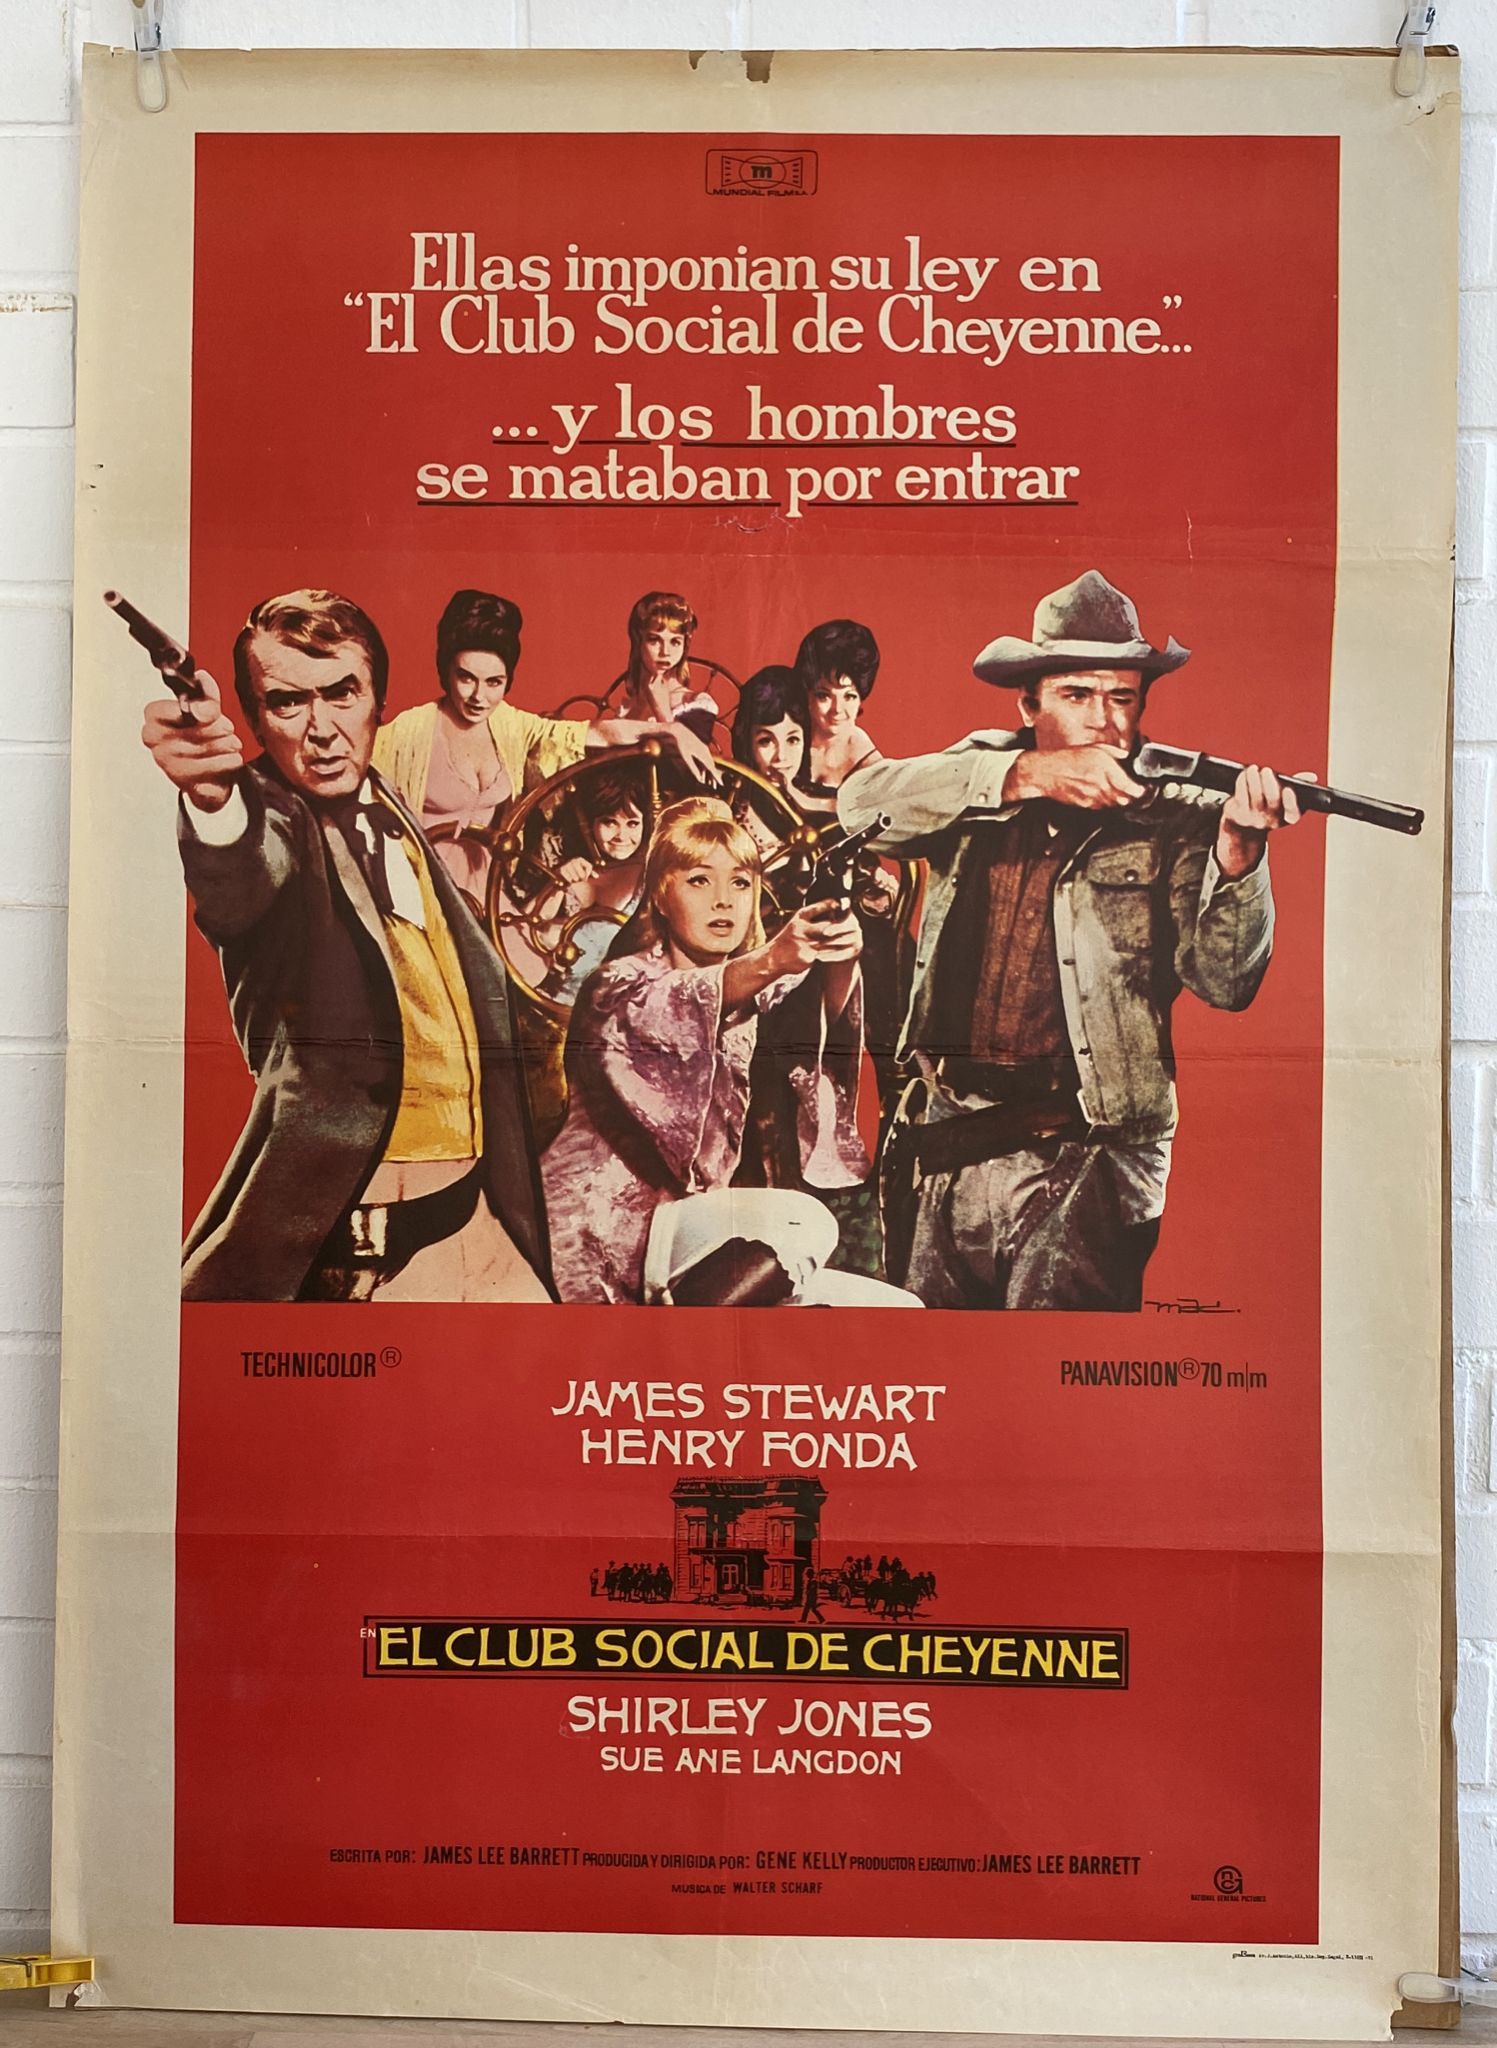 El Club Social de Cheyenne. Cartel (100x70) de Estreno, 1971